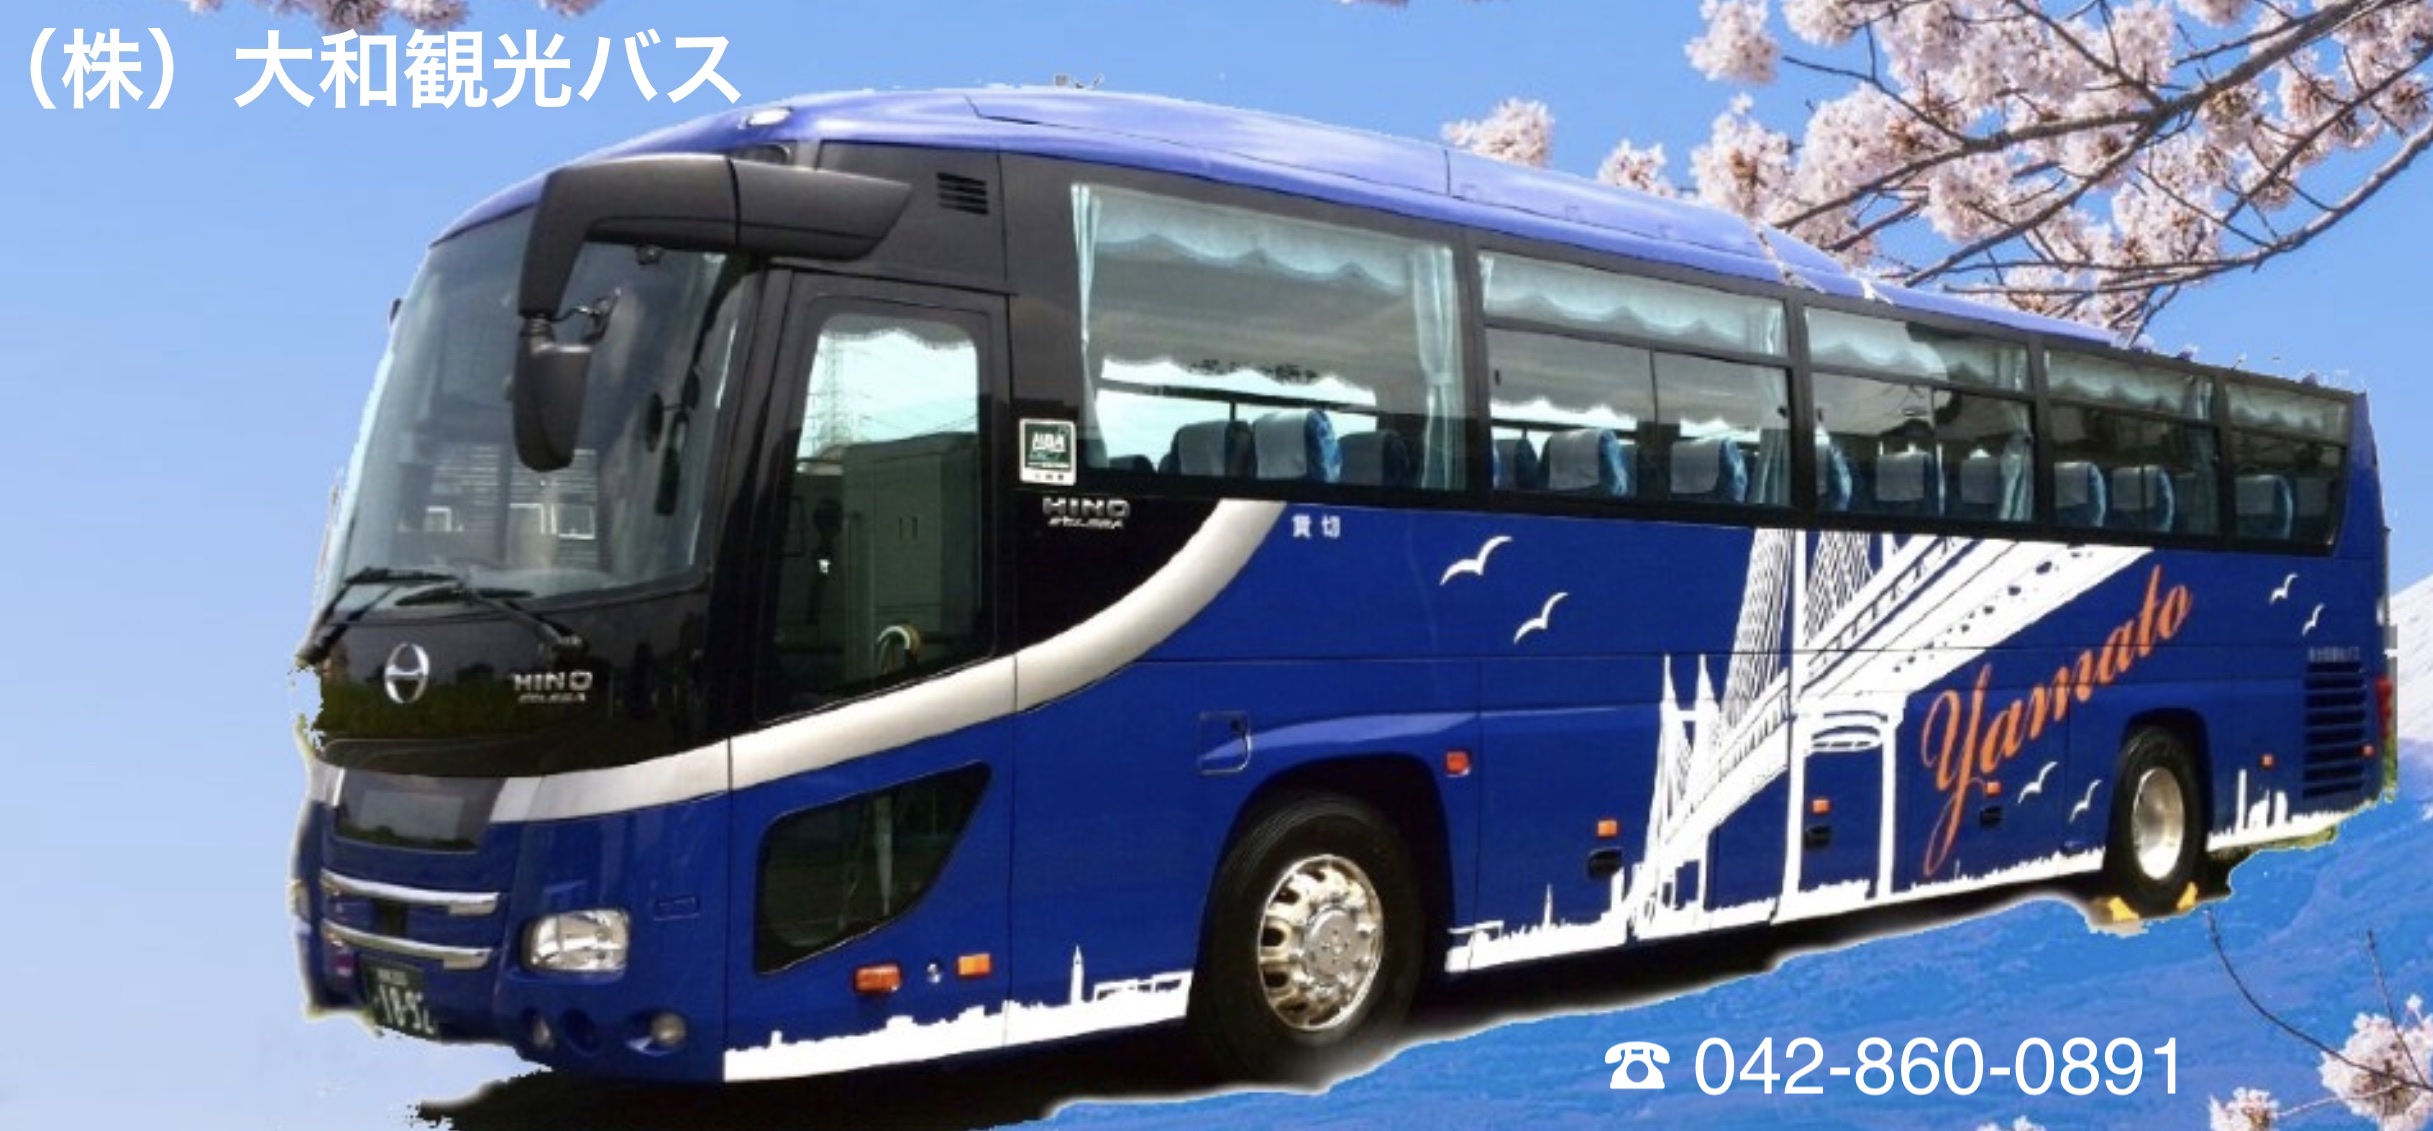 ㈱大和観光バス( やまとかんこうバス) | 東京都町田市